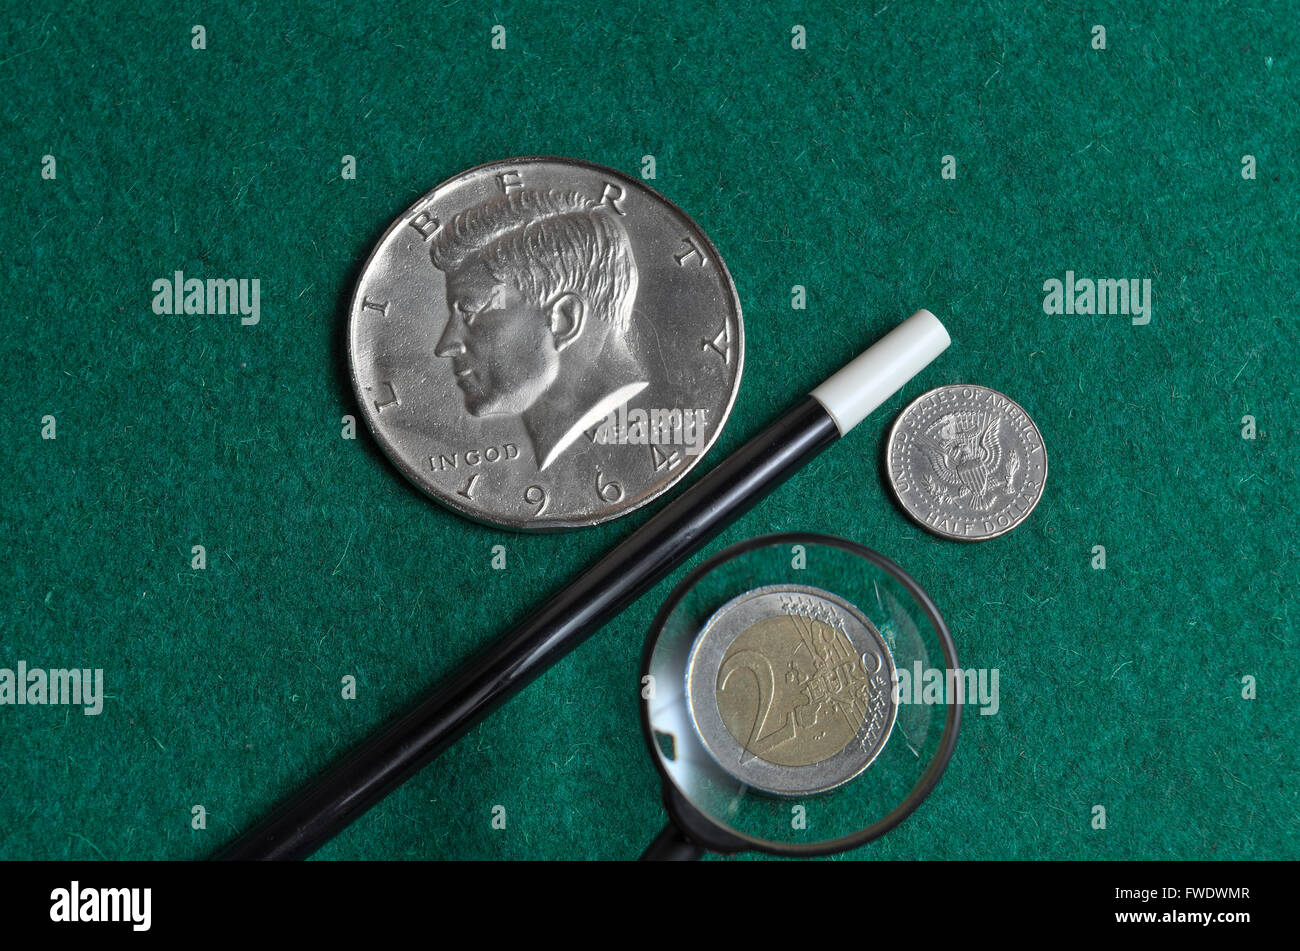 Zauberstab mit europäischen und amerikanischen Münzen auf einer grünen Casino-Matte Stockfoto